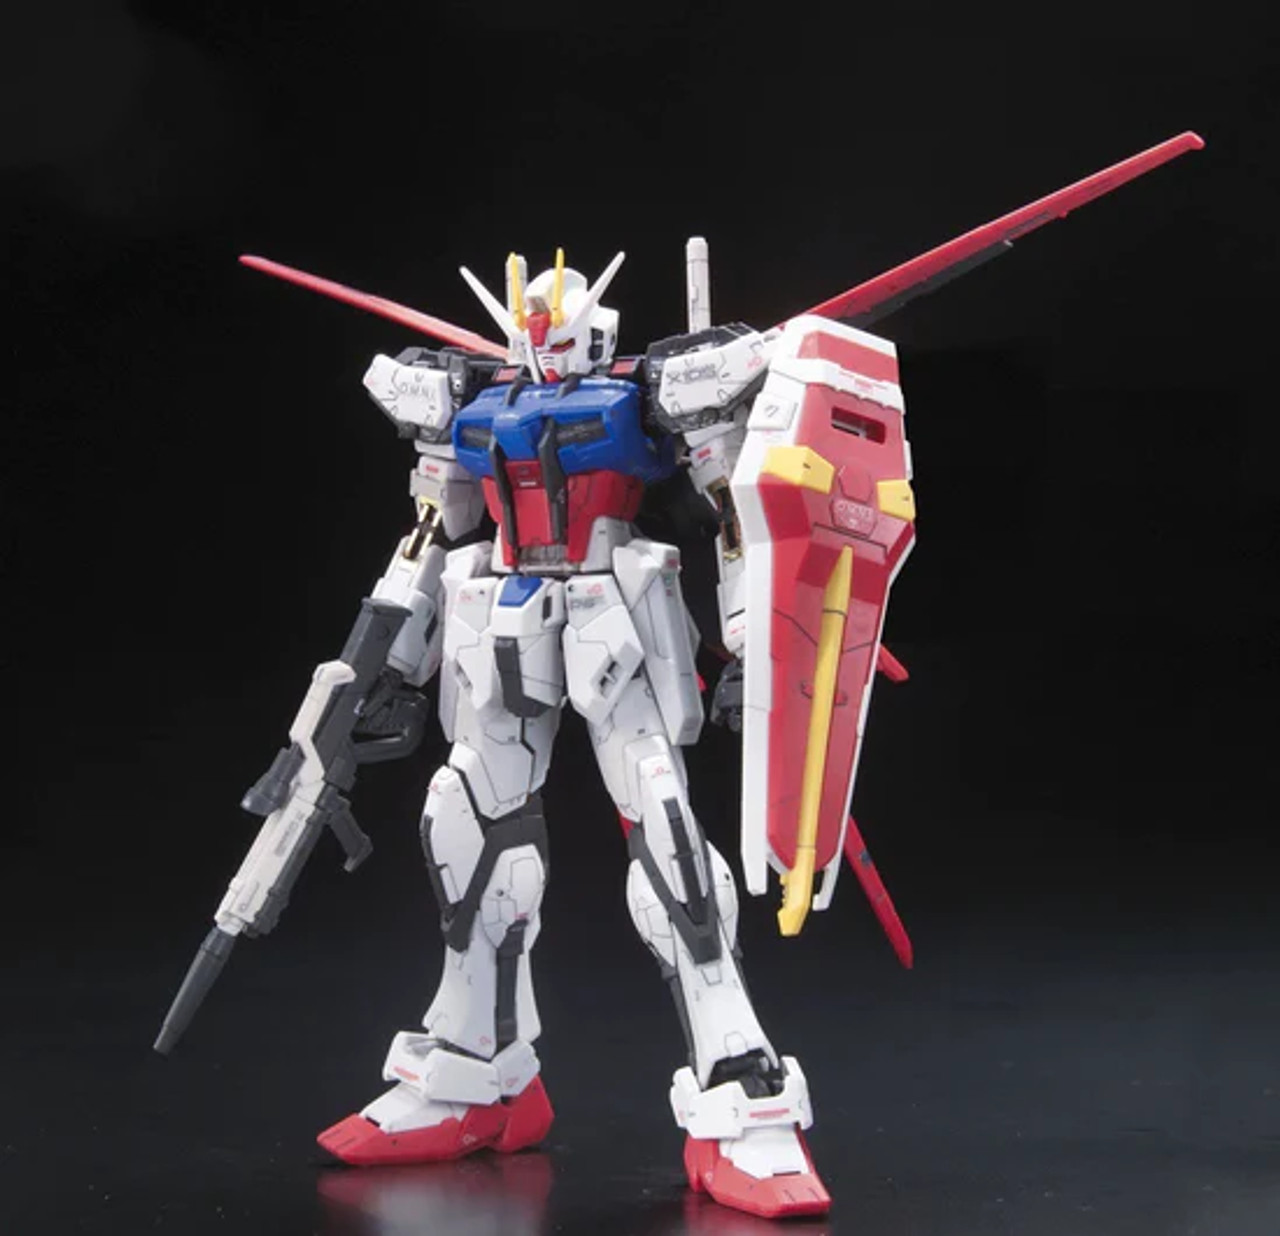 Bandai RG 1/144 #3 GAT-X105 Aile Strike Gundam "Gundam SEED"